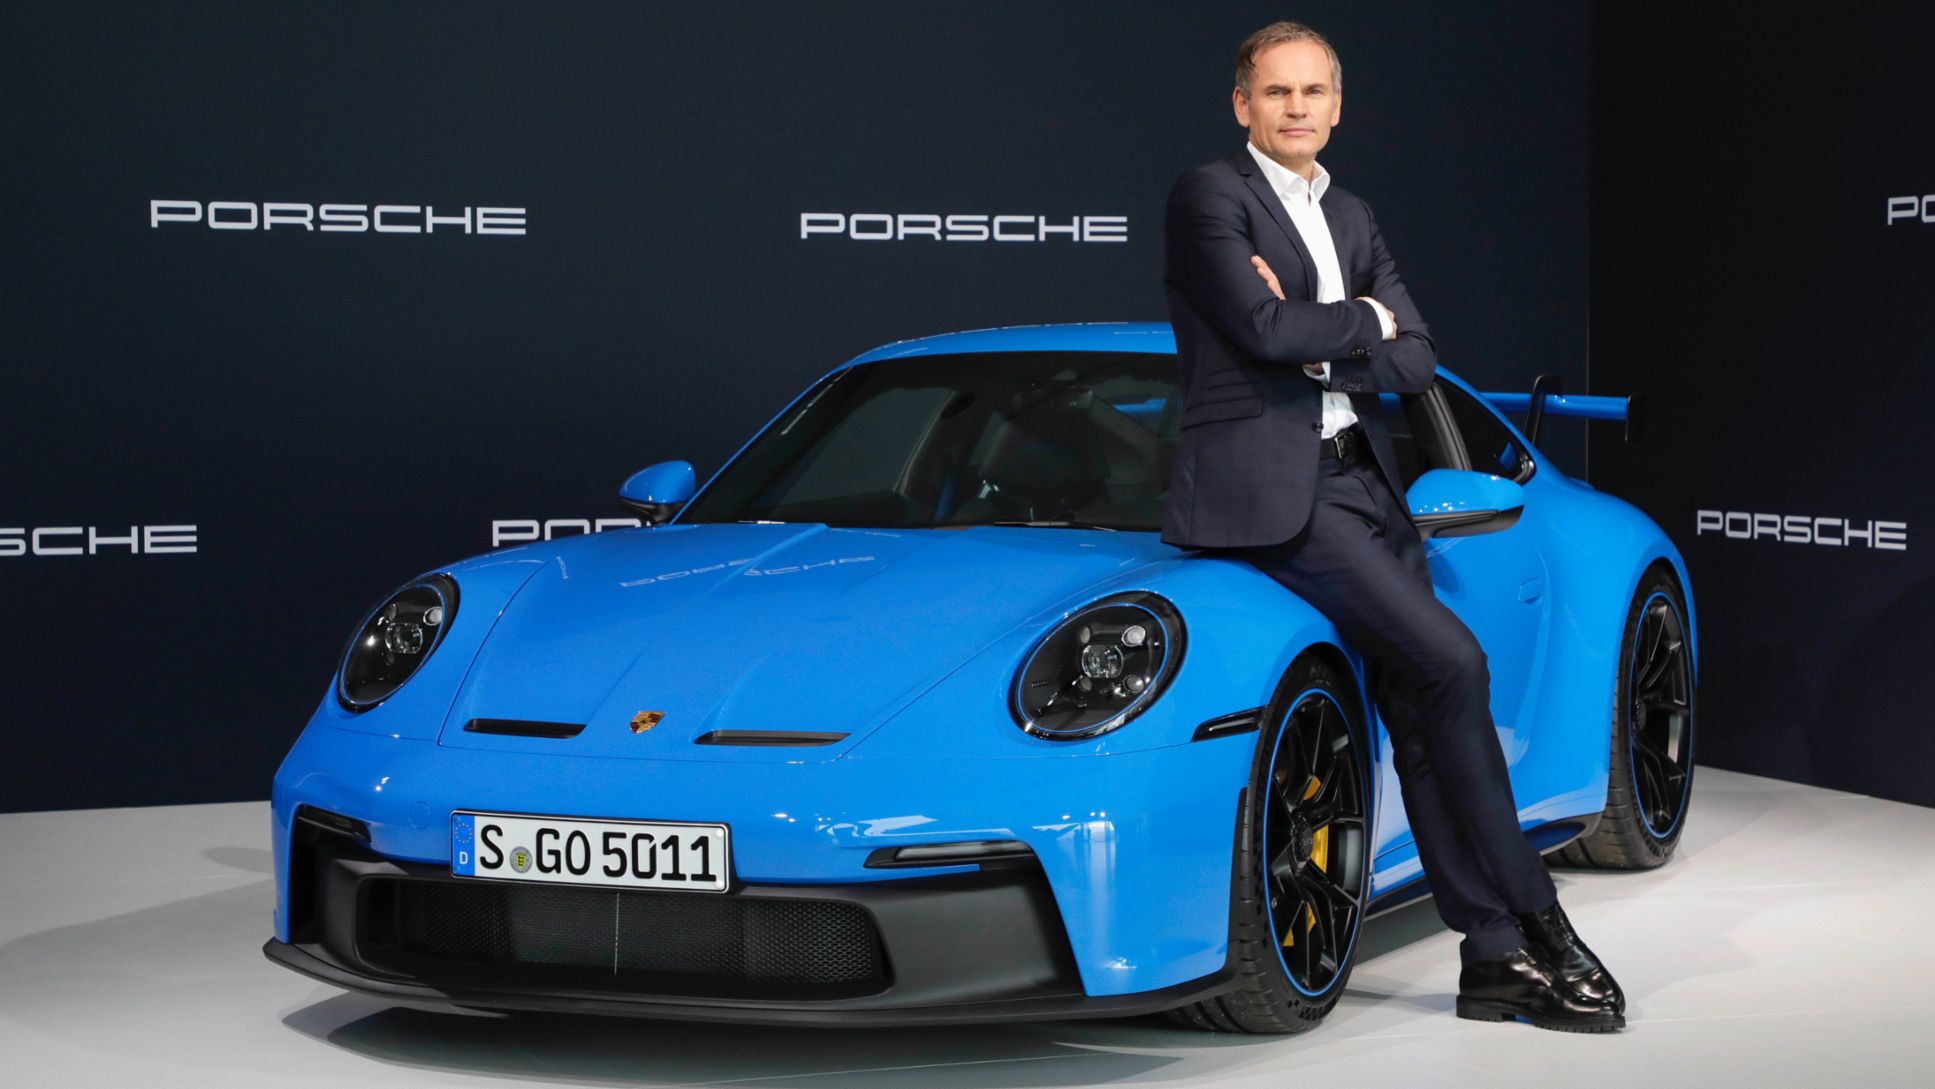 Oliver Blume, Presidente del Consejo de Dirección de Dr. Ing. h.c. F. Porsche AG, conferencia de prensa anual, 2021, Porsche AG